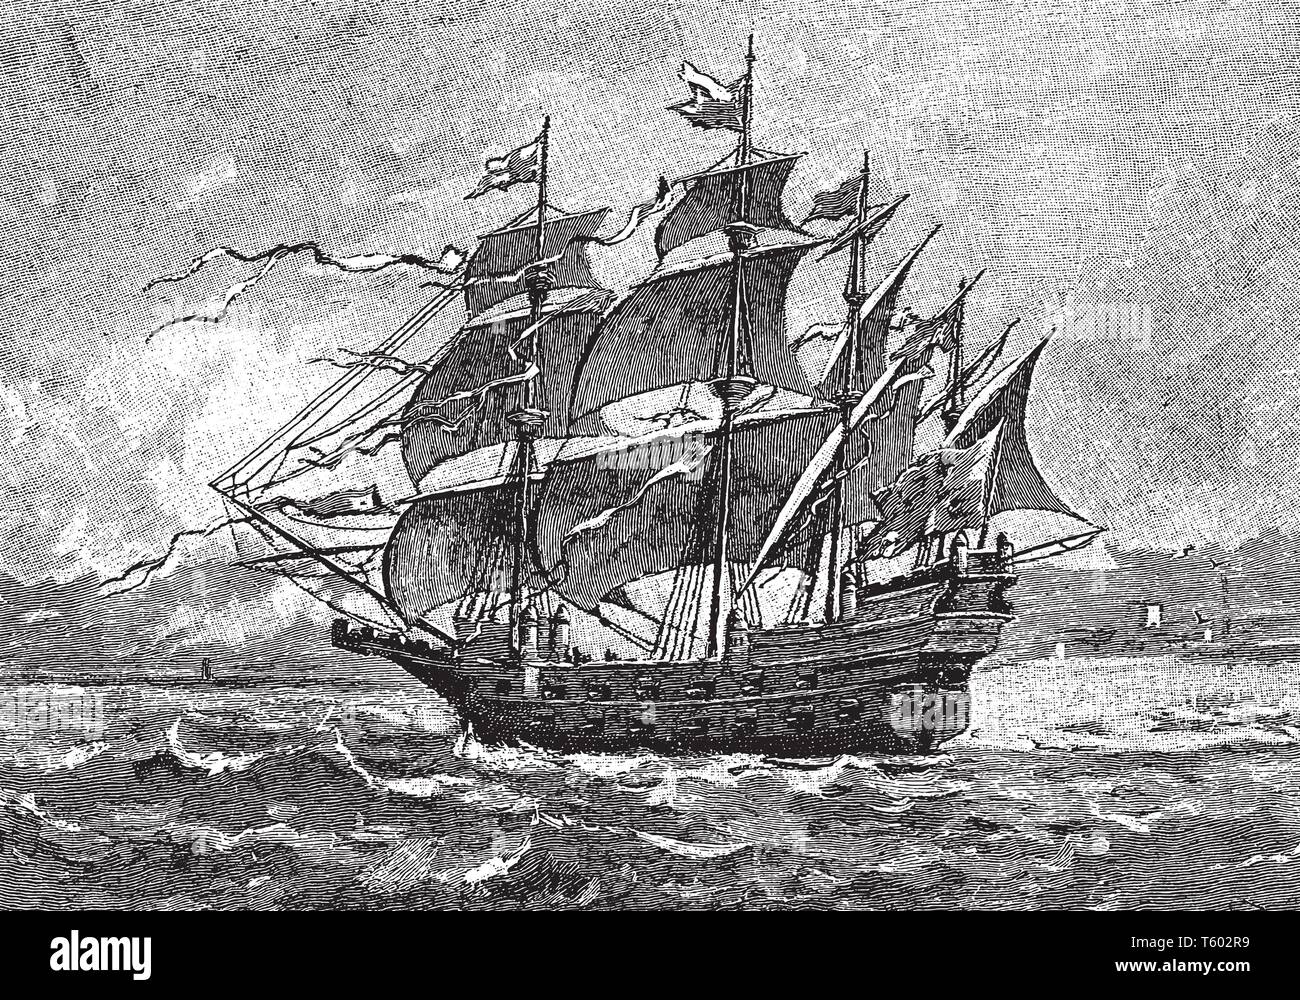 Harry est le premier grand navire célèbre de la marine anglaise construit en 1512, le dessin des lignes vintage ou gravure illustration. Illustration de Vecteur